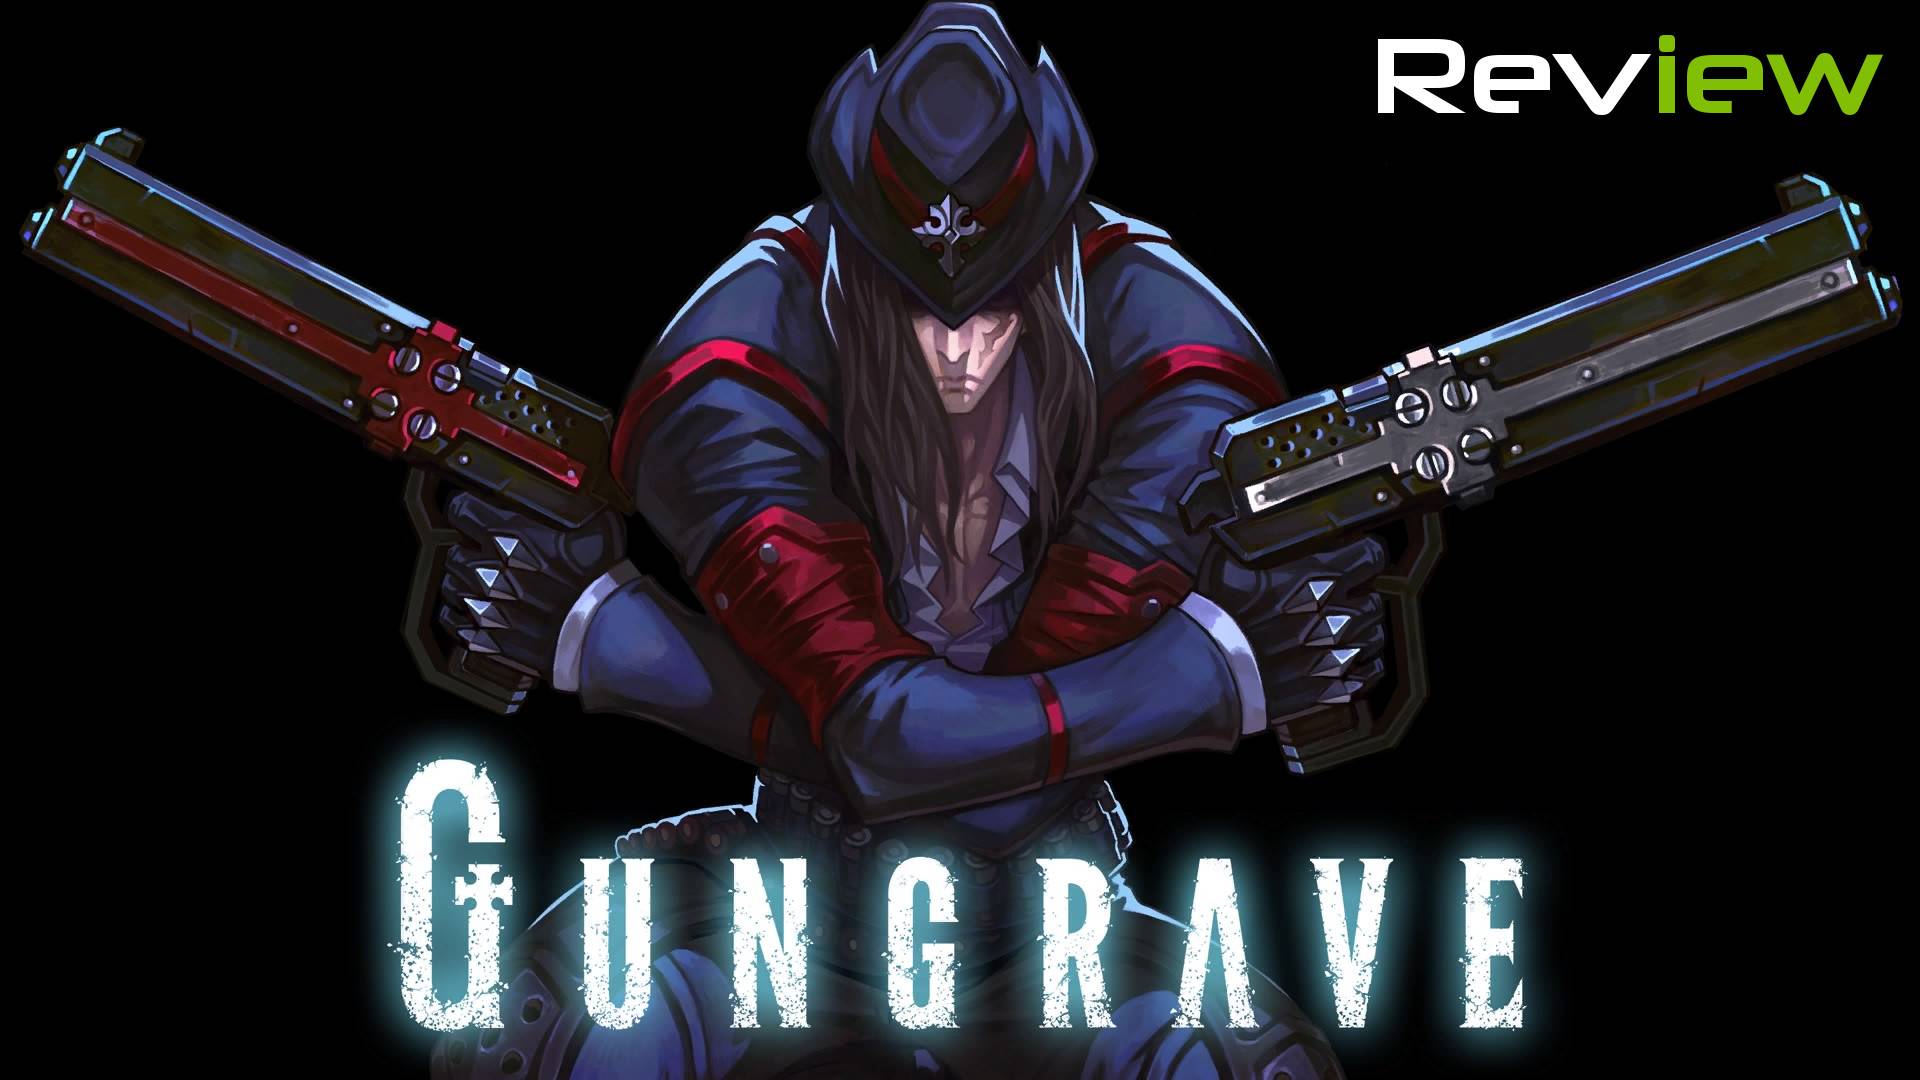 gungrave-vr-review-header.jpg